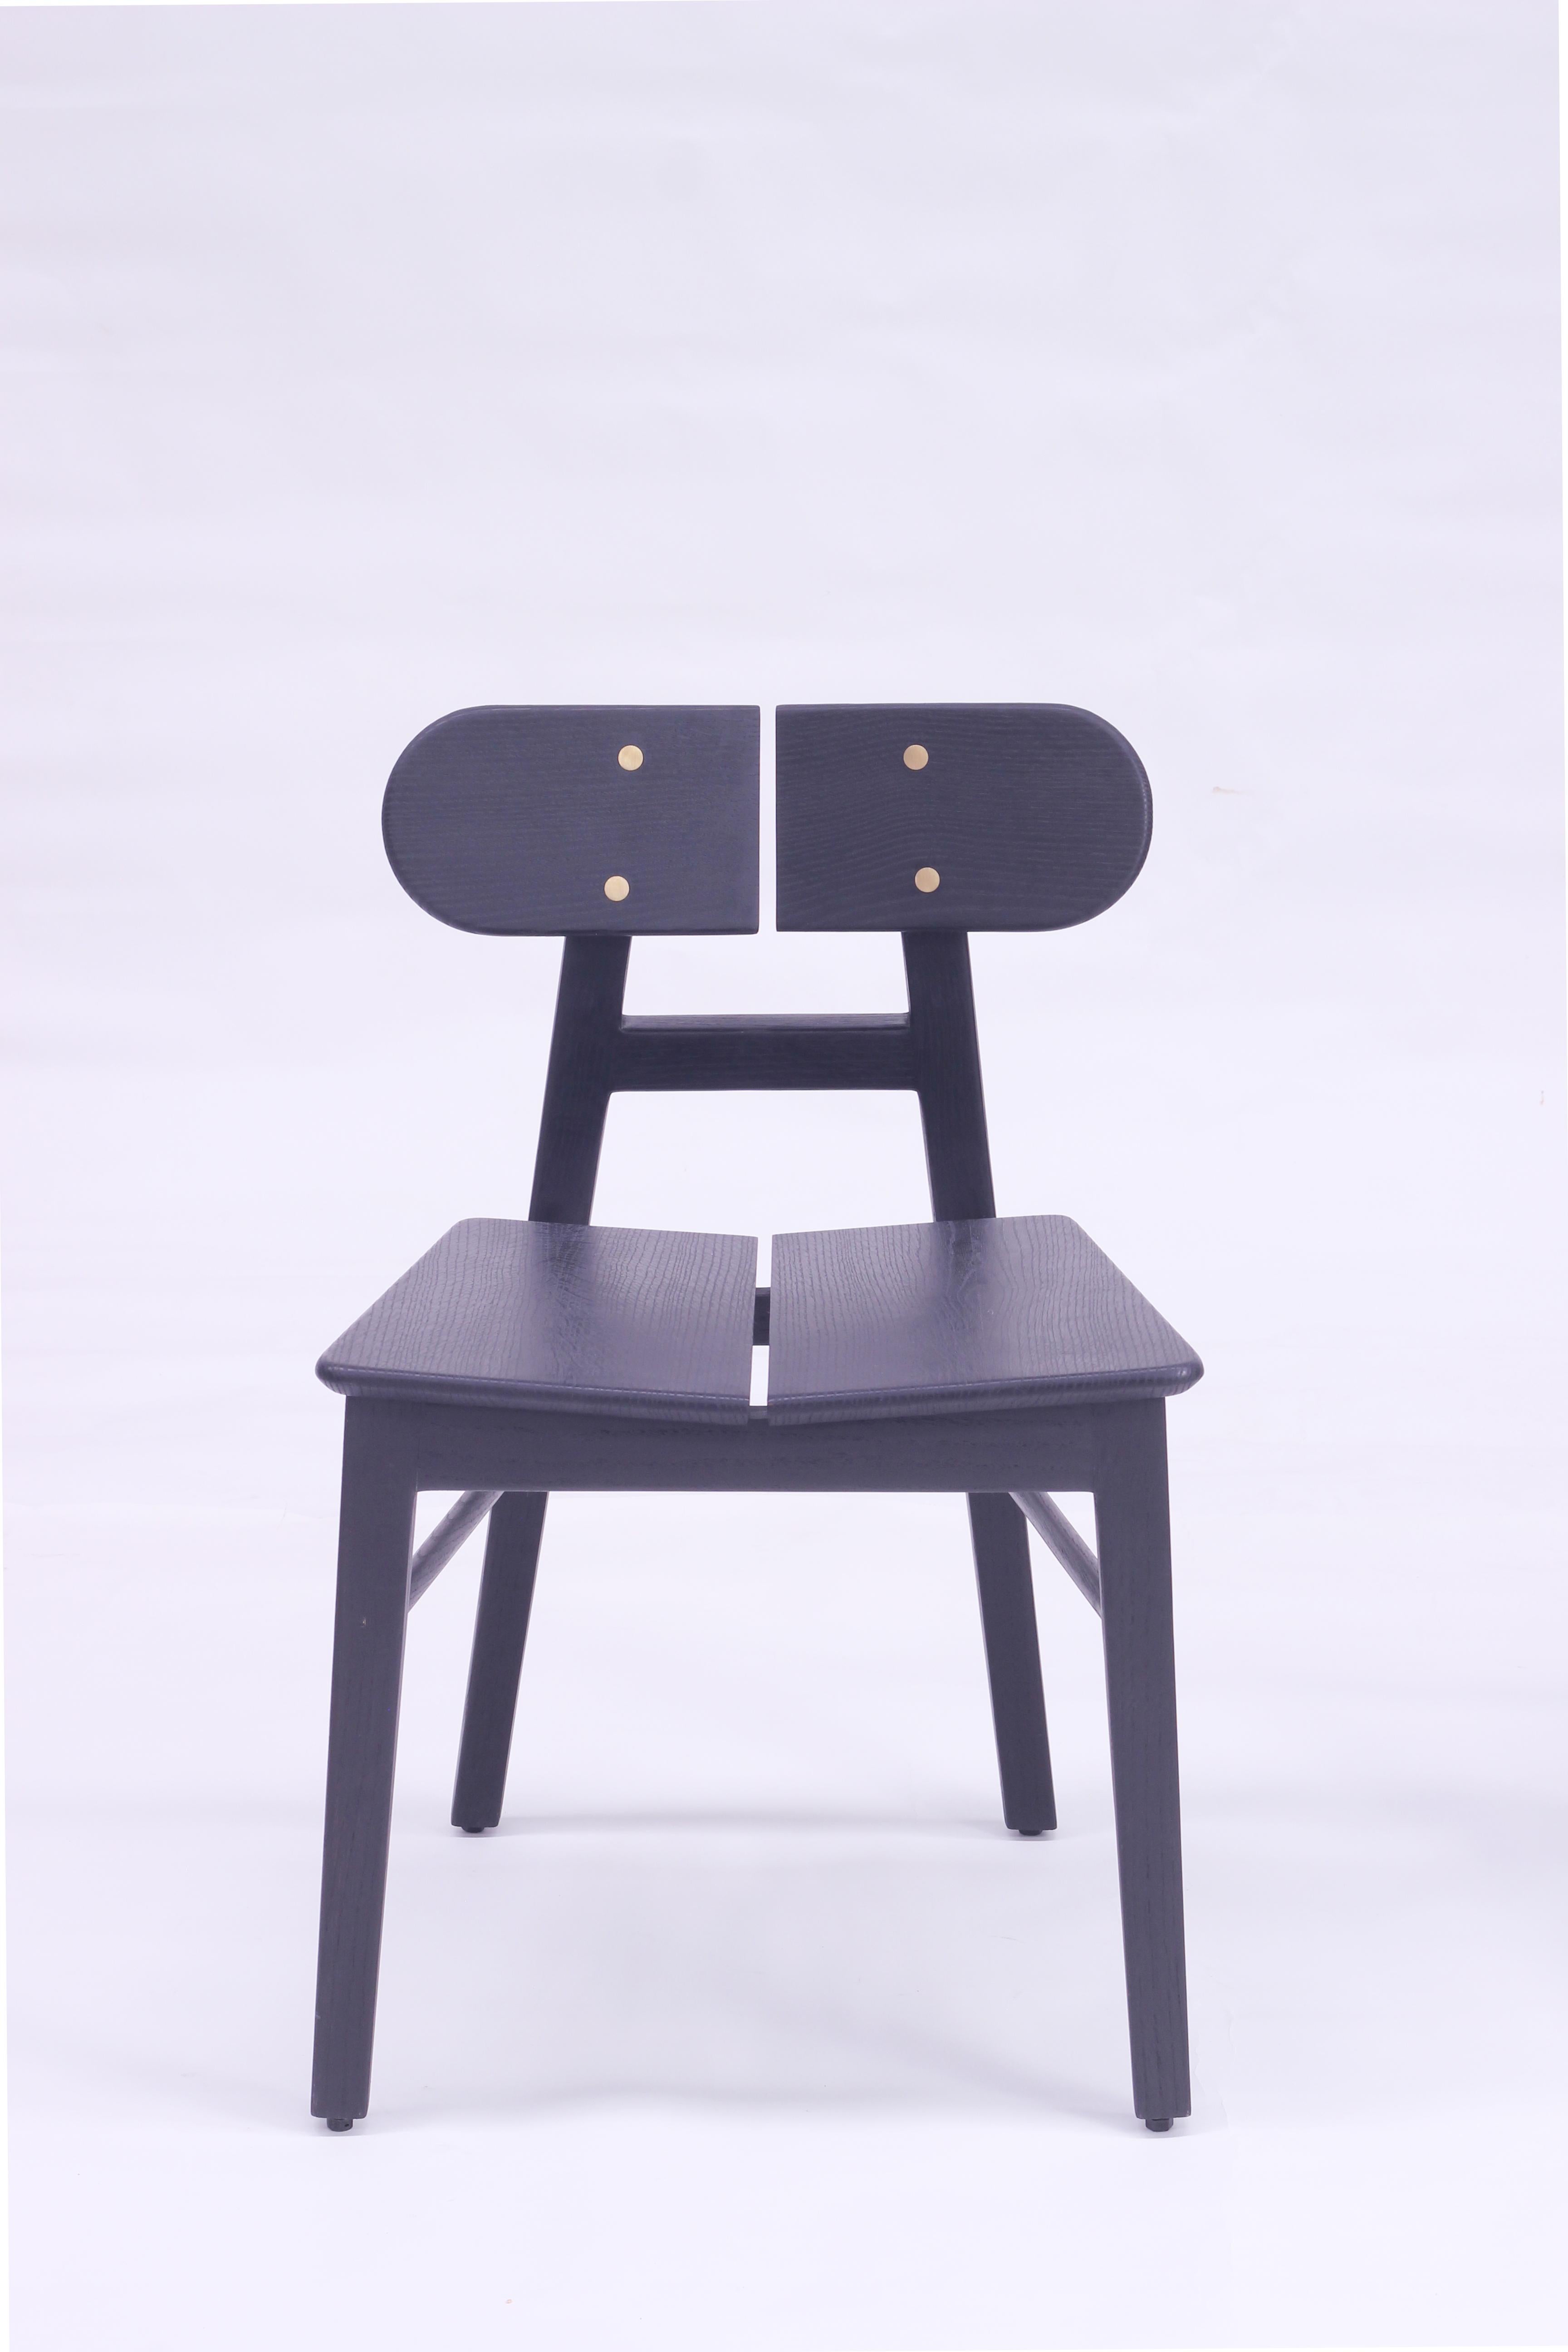 Der Stuhl BUTTERFLY ist ein Massivholzstuhl mit zeitloser Ästhetik, der von der Schönheit eines Schmetterlings inspiriert ist und mit einer Designphilosophie des bewussten Minimalismus entwickelt wurde. Der schwarze Massivholzstuhl setzt mit seinen